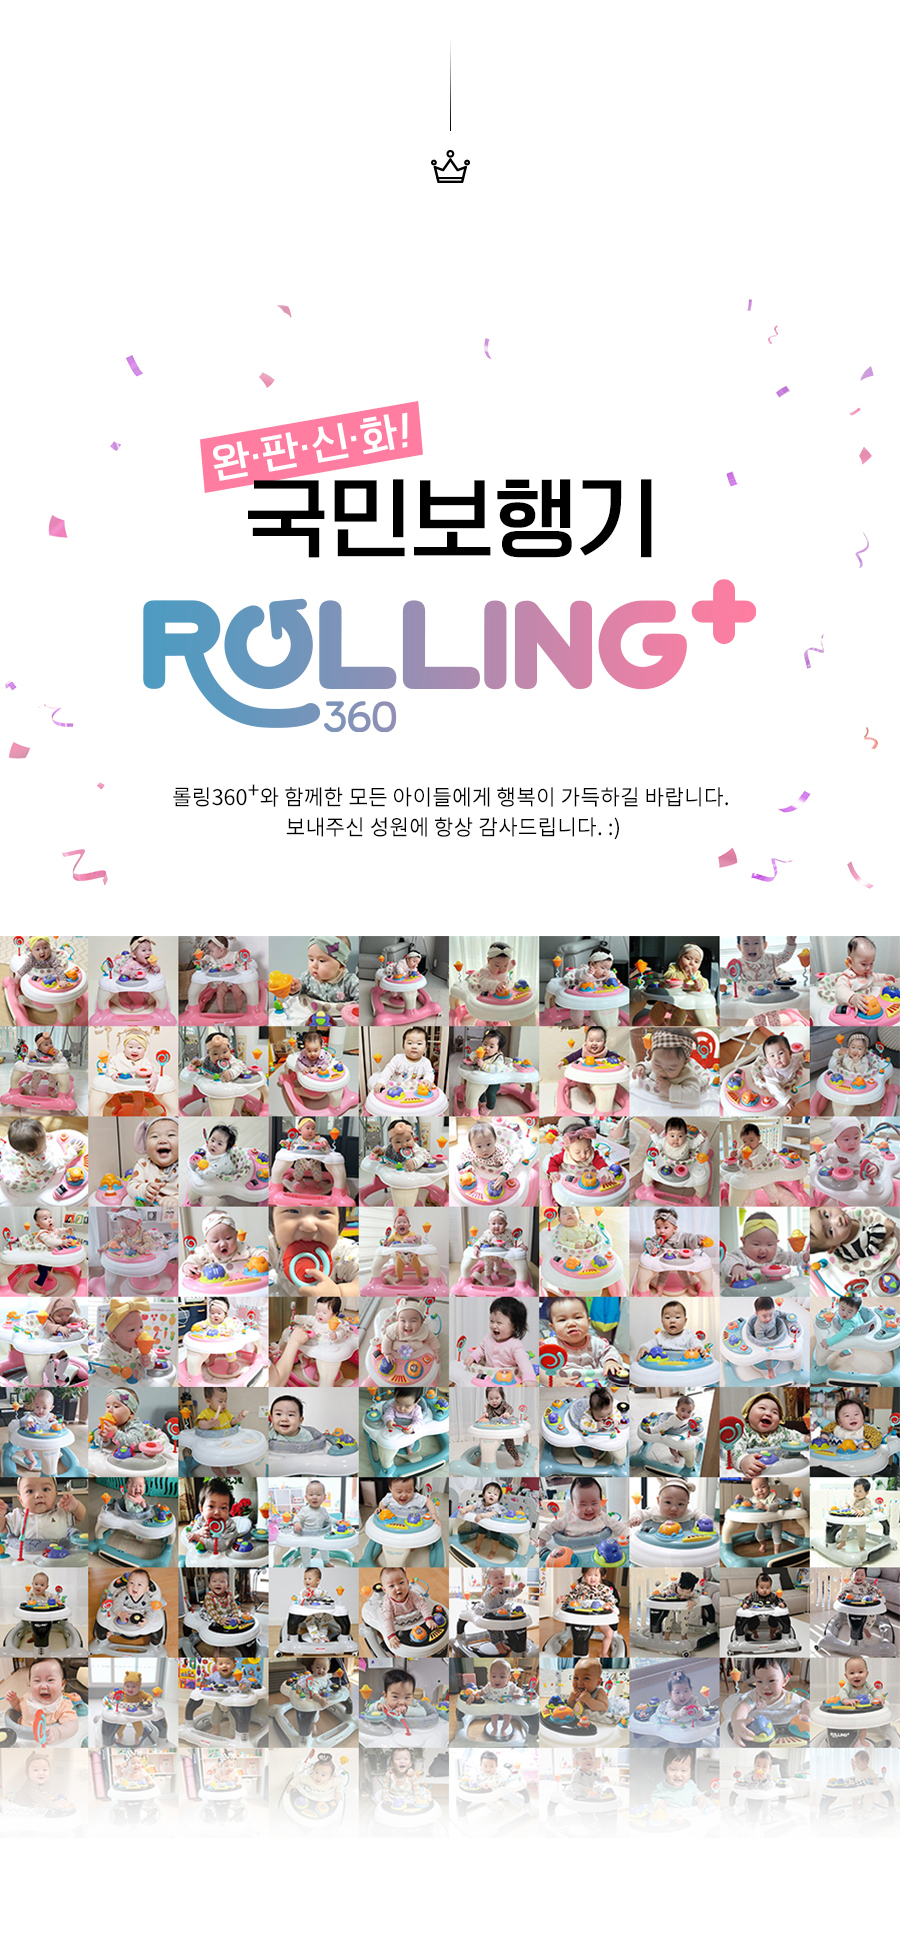 rollingplus_02.jpg